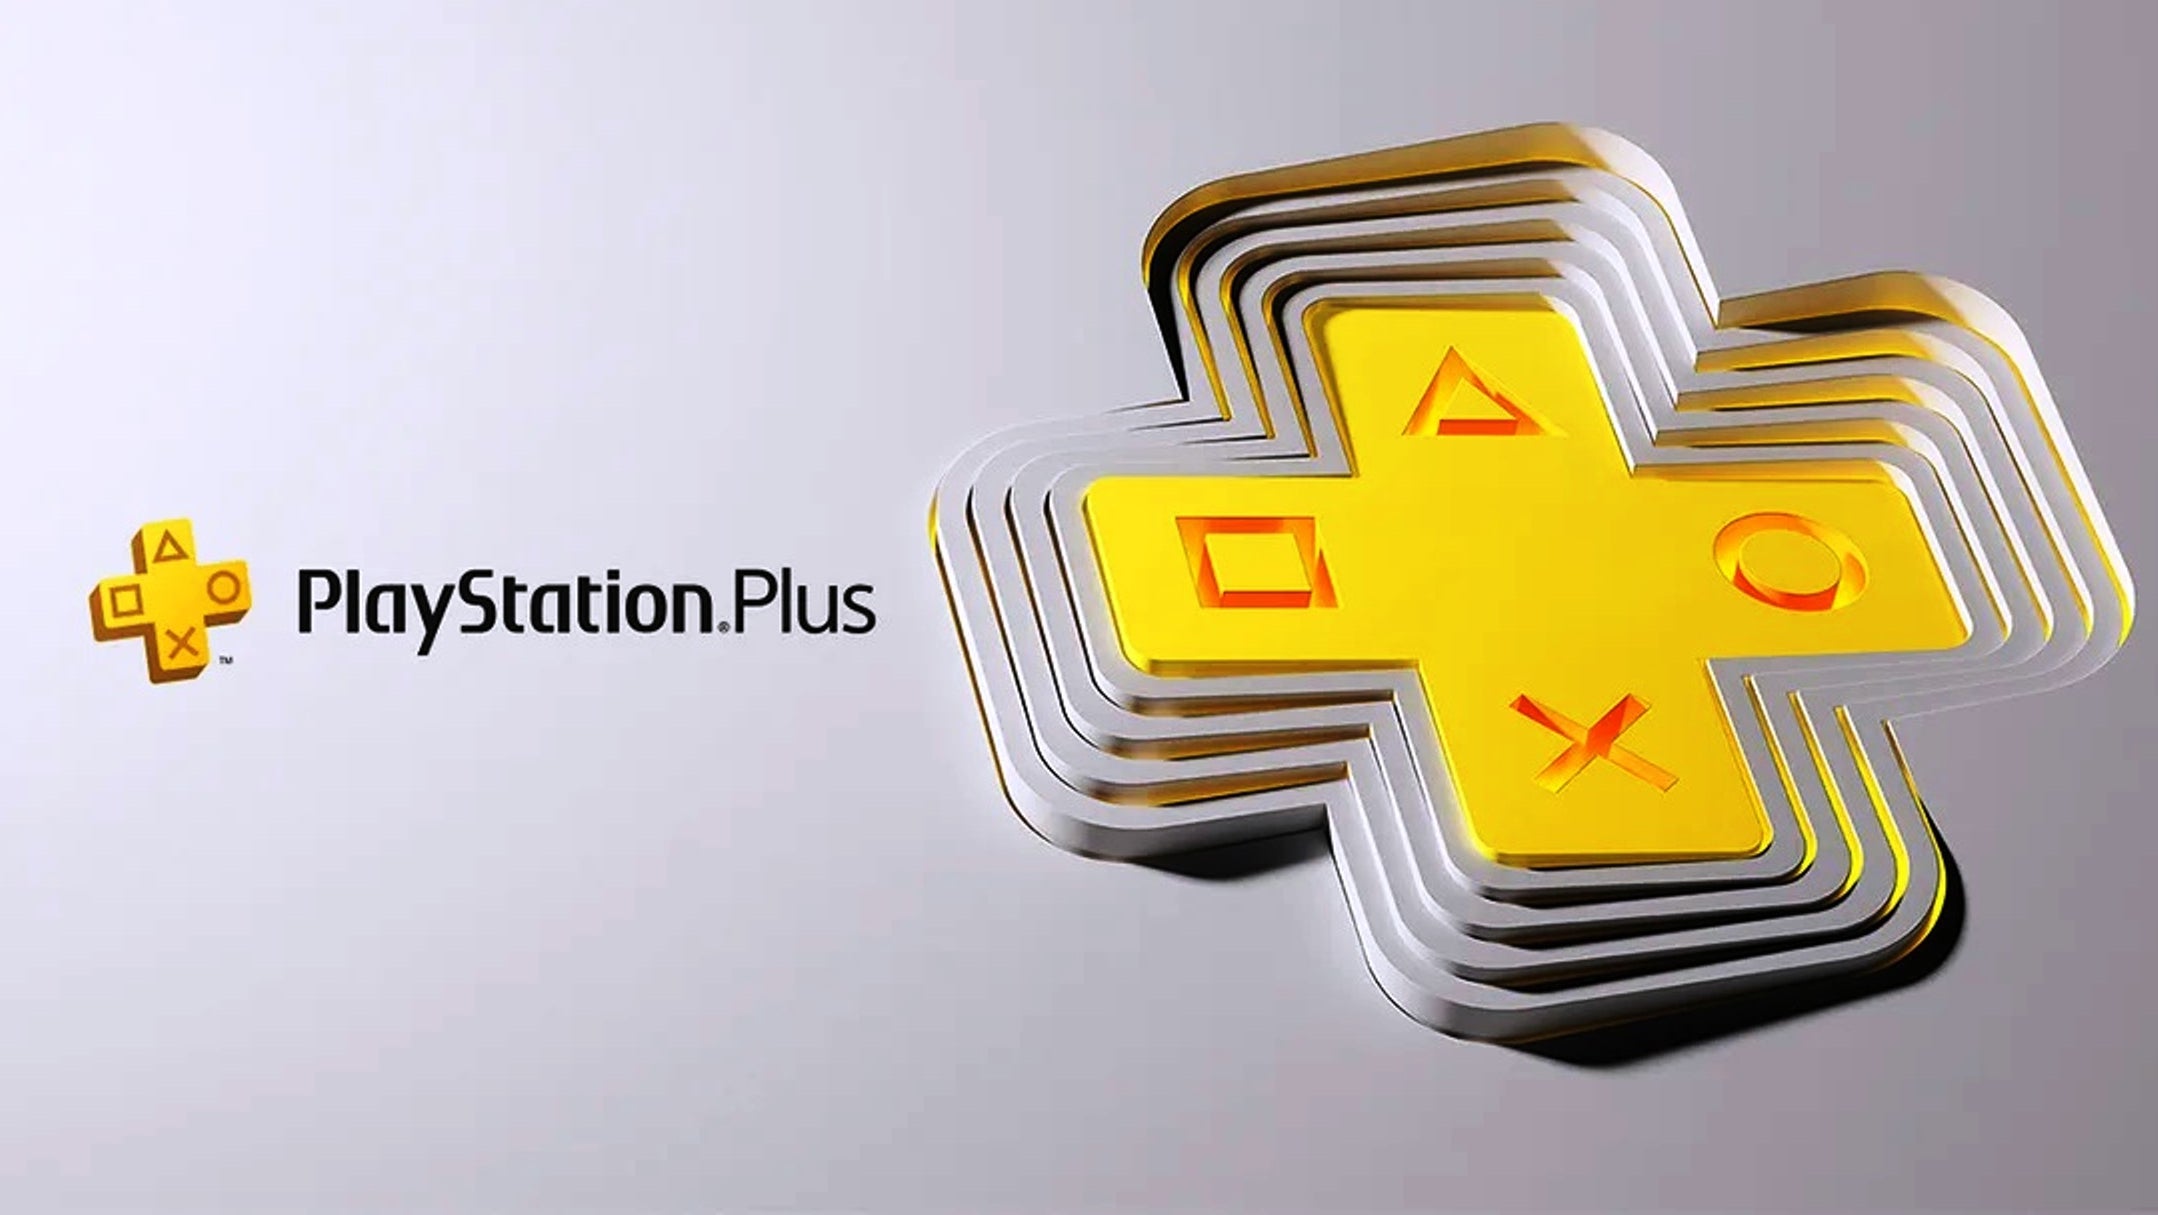 Bilder zu Playstation Plus-Premium ist eine Menge, aber kein moderner Abo-Service